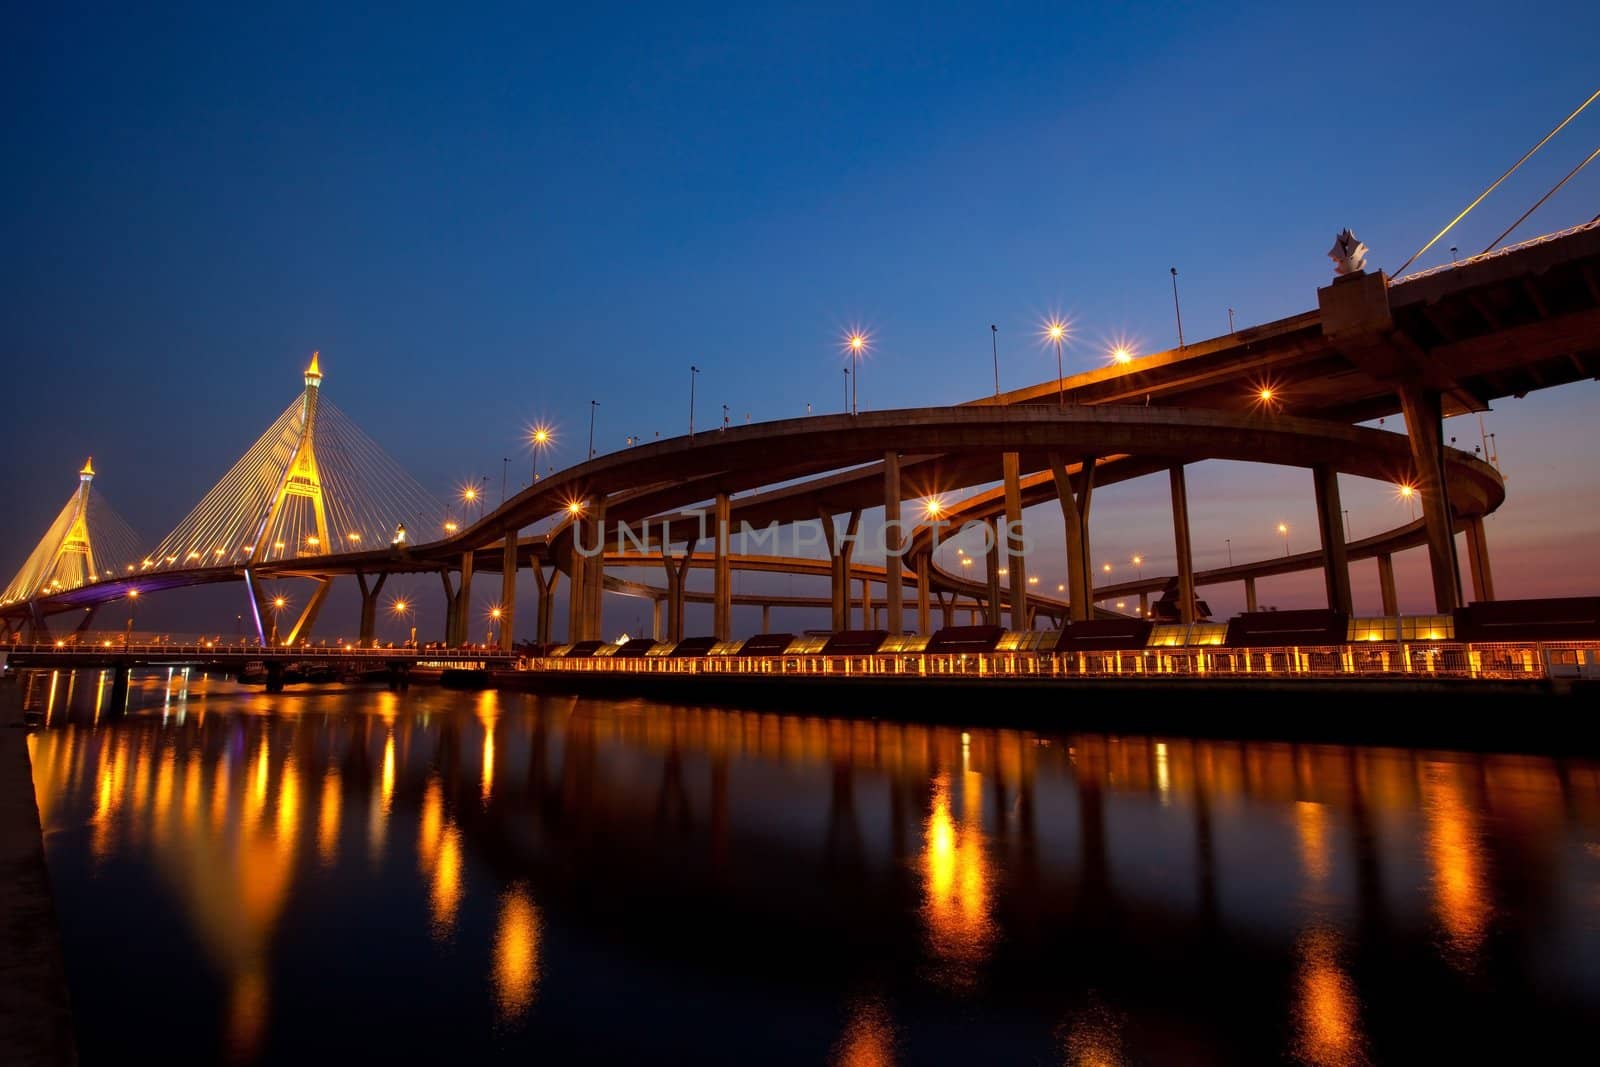 Bhumibol Bridge in Thailand by witthaya